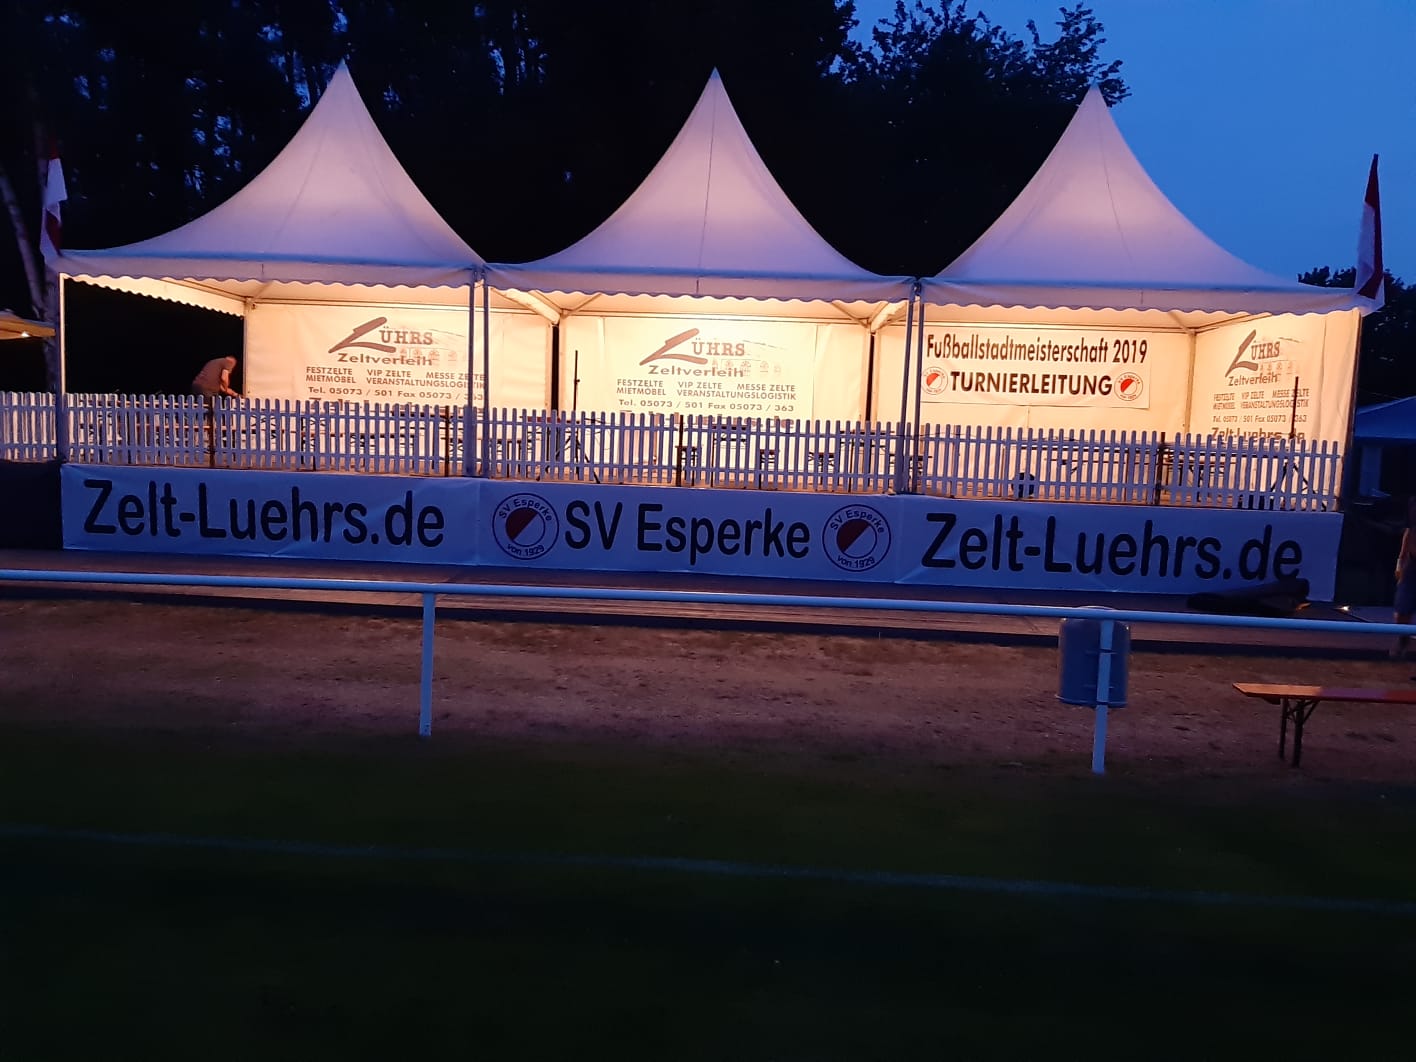 Zelt-Luehrs.de